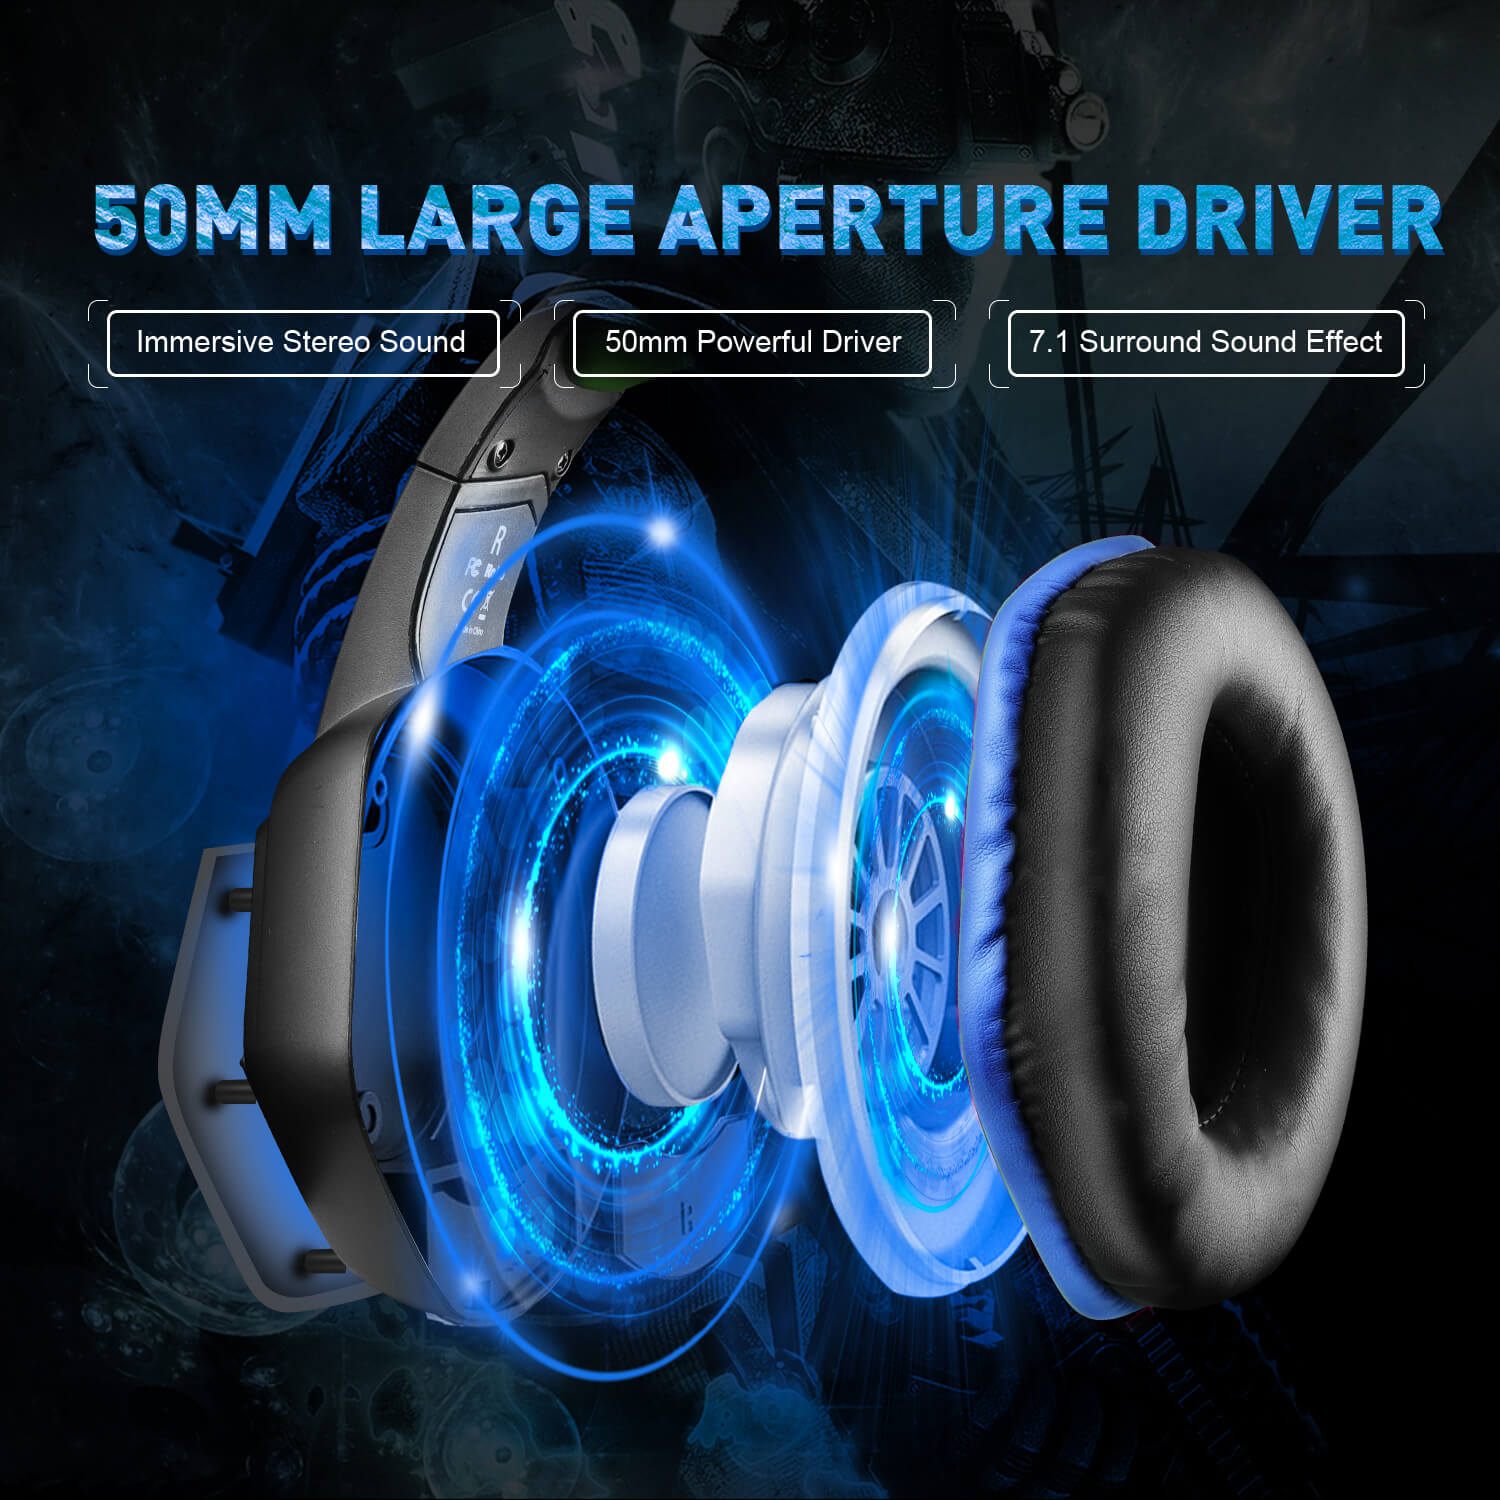 Headset Blue EKSA-TRADE Over-ear E1000, Mikrofon Gaming mit USB